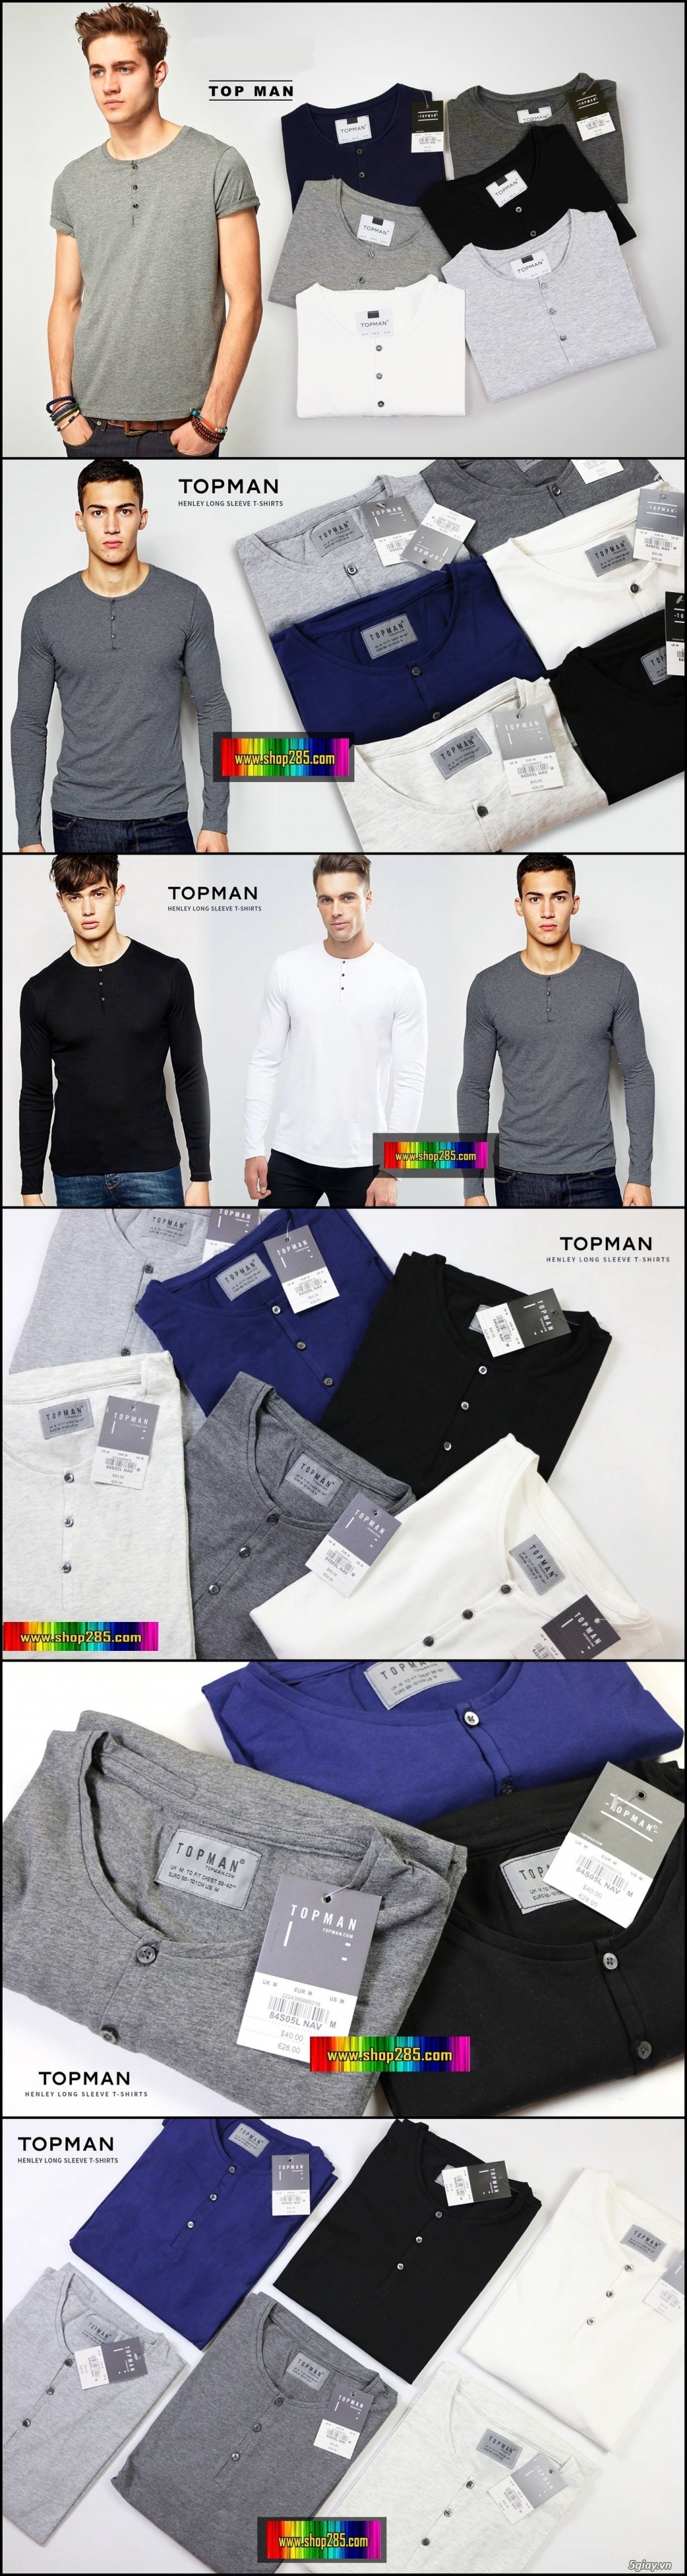 Shop285.com - Shop quần áo thời trang nam VNXK mẫu mới về liên tục ^^ - 36